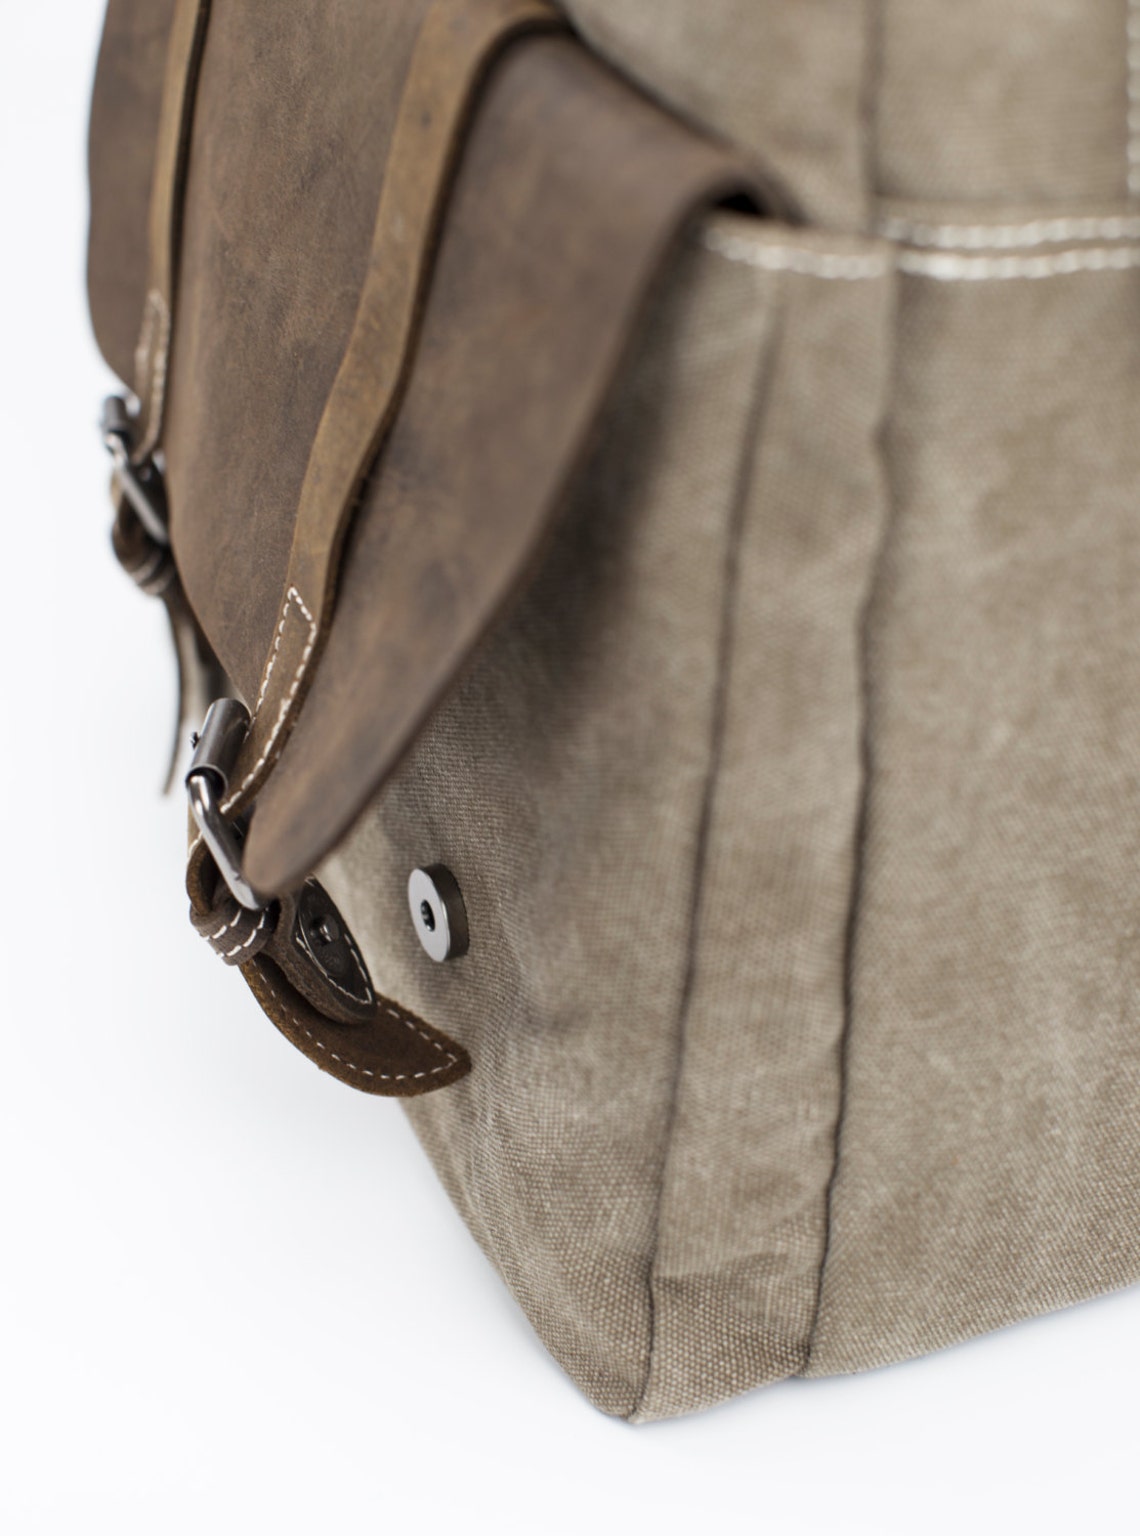 Vintage Style Heritage Leather Canvas Backpack Khaki | Etsy